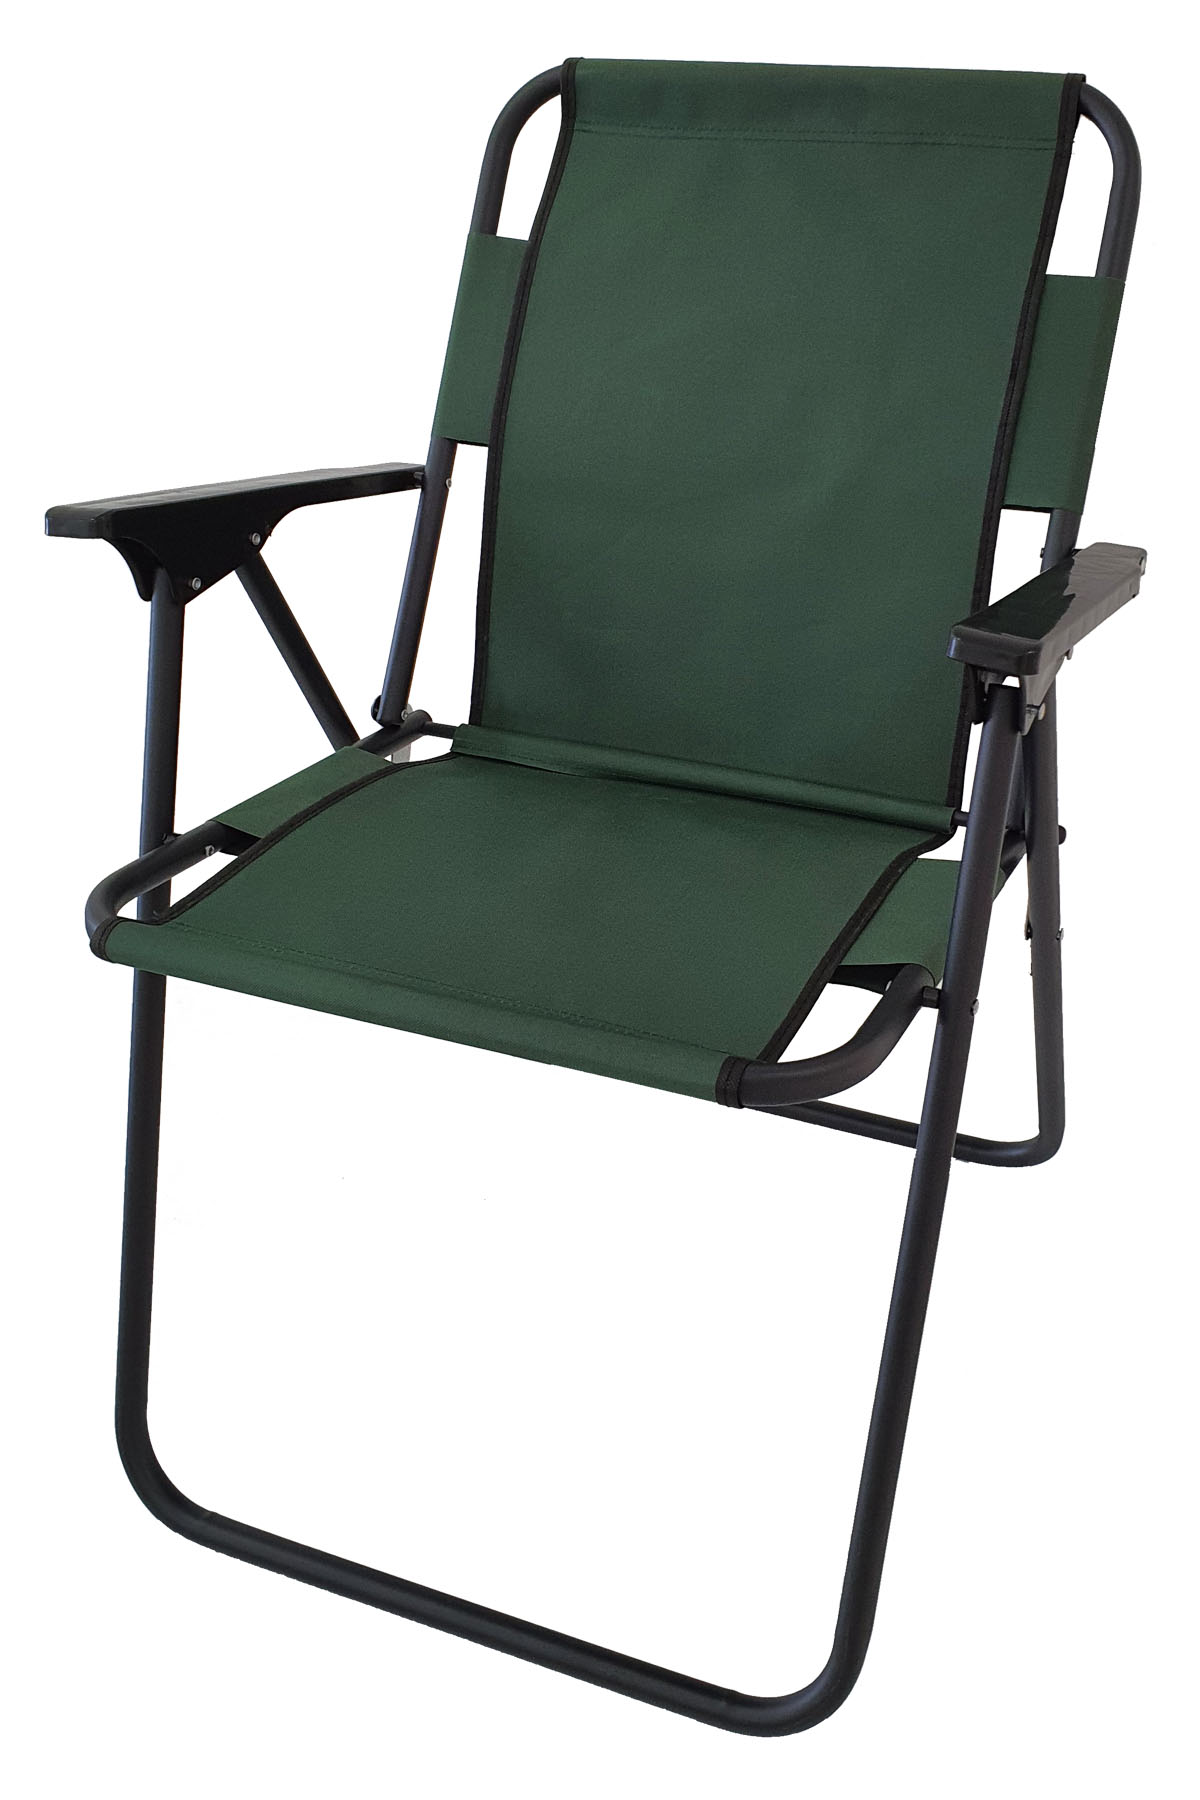 Bofigo Kamp Sandalyesi Katlanır Sandalye Piknik Sandalyesi Plaj Sandalyesi Yeşil